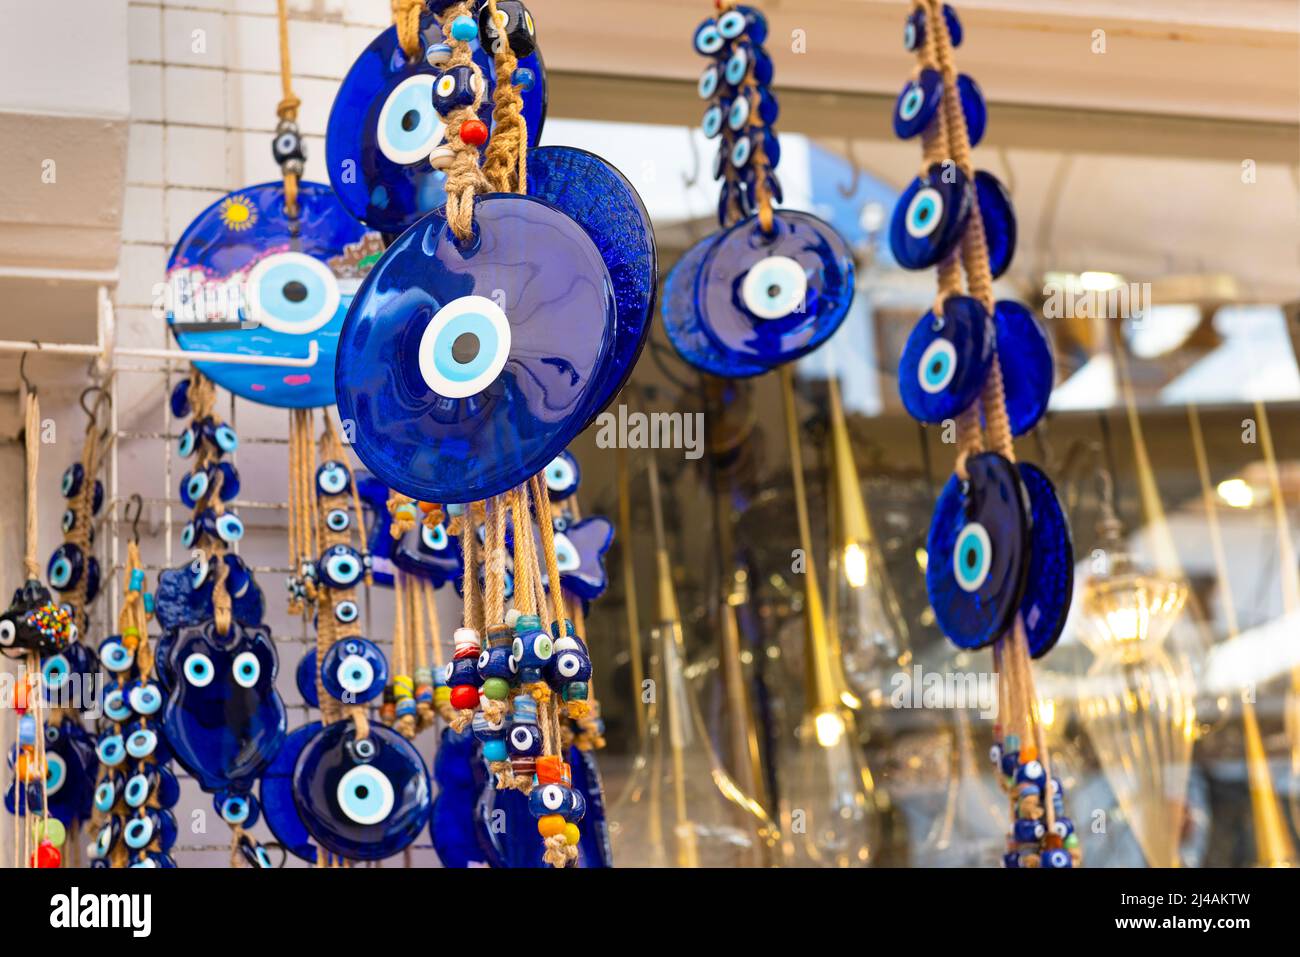 Mal Eye Bead dans la boutique de souvenirs turque. Mascotte turque pour les yeux. Mise au point sélective. Banque D'Images